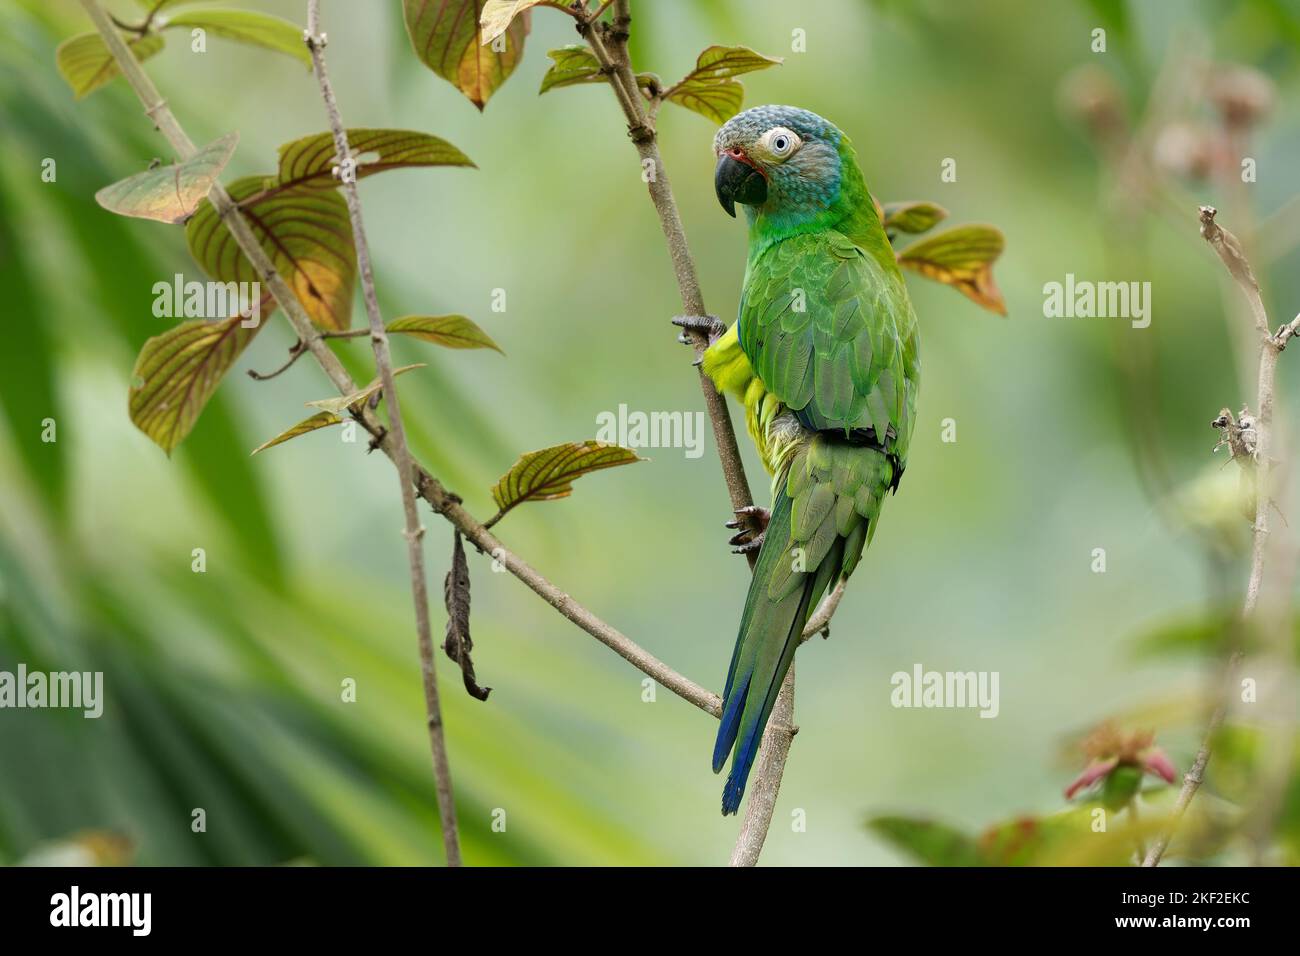 Parakeet de cabeza oscura - Aratinga weddellii También conure de Weddell, loro neotropical verde pequeño, en hábitats boscosos en la cuenca amazónica de América del Sur Foto de stock